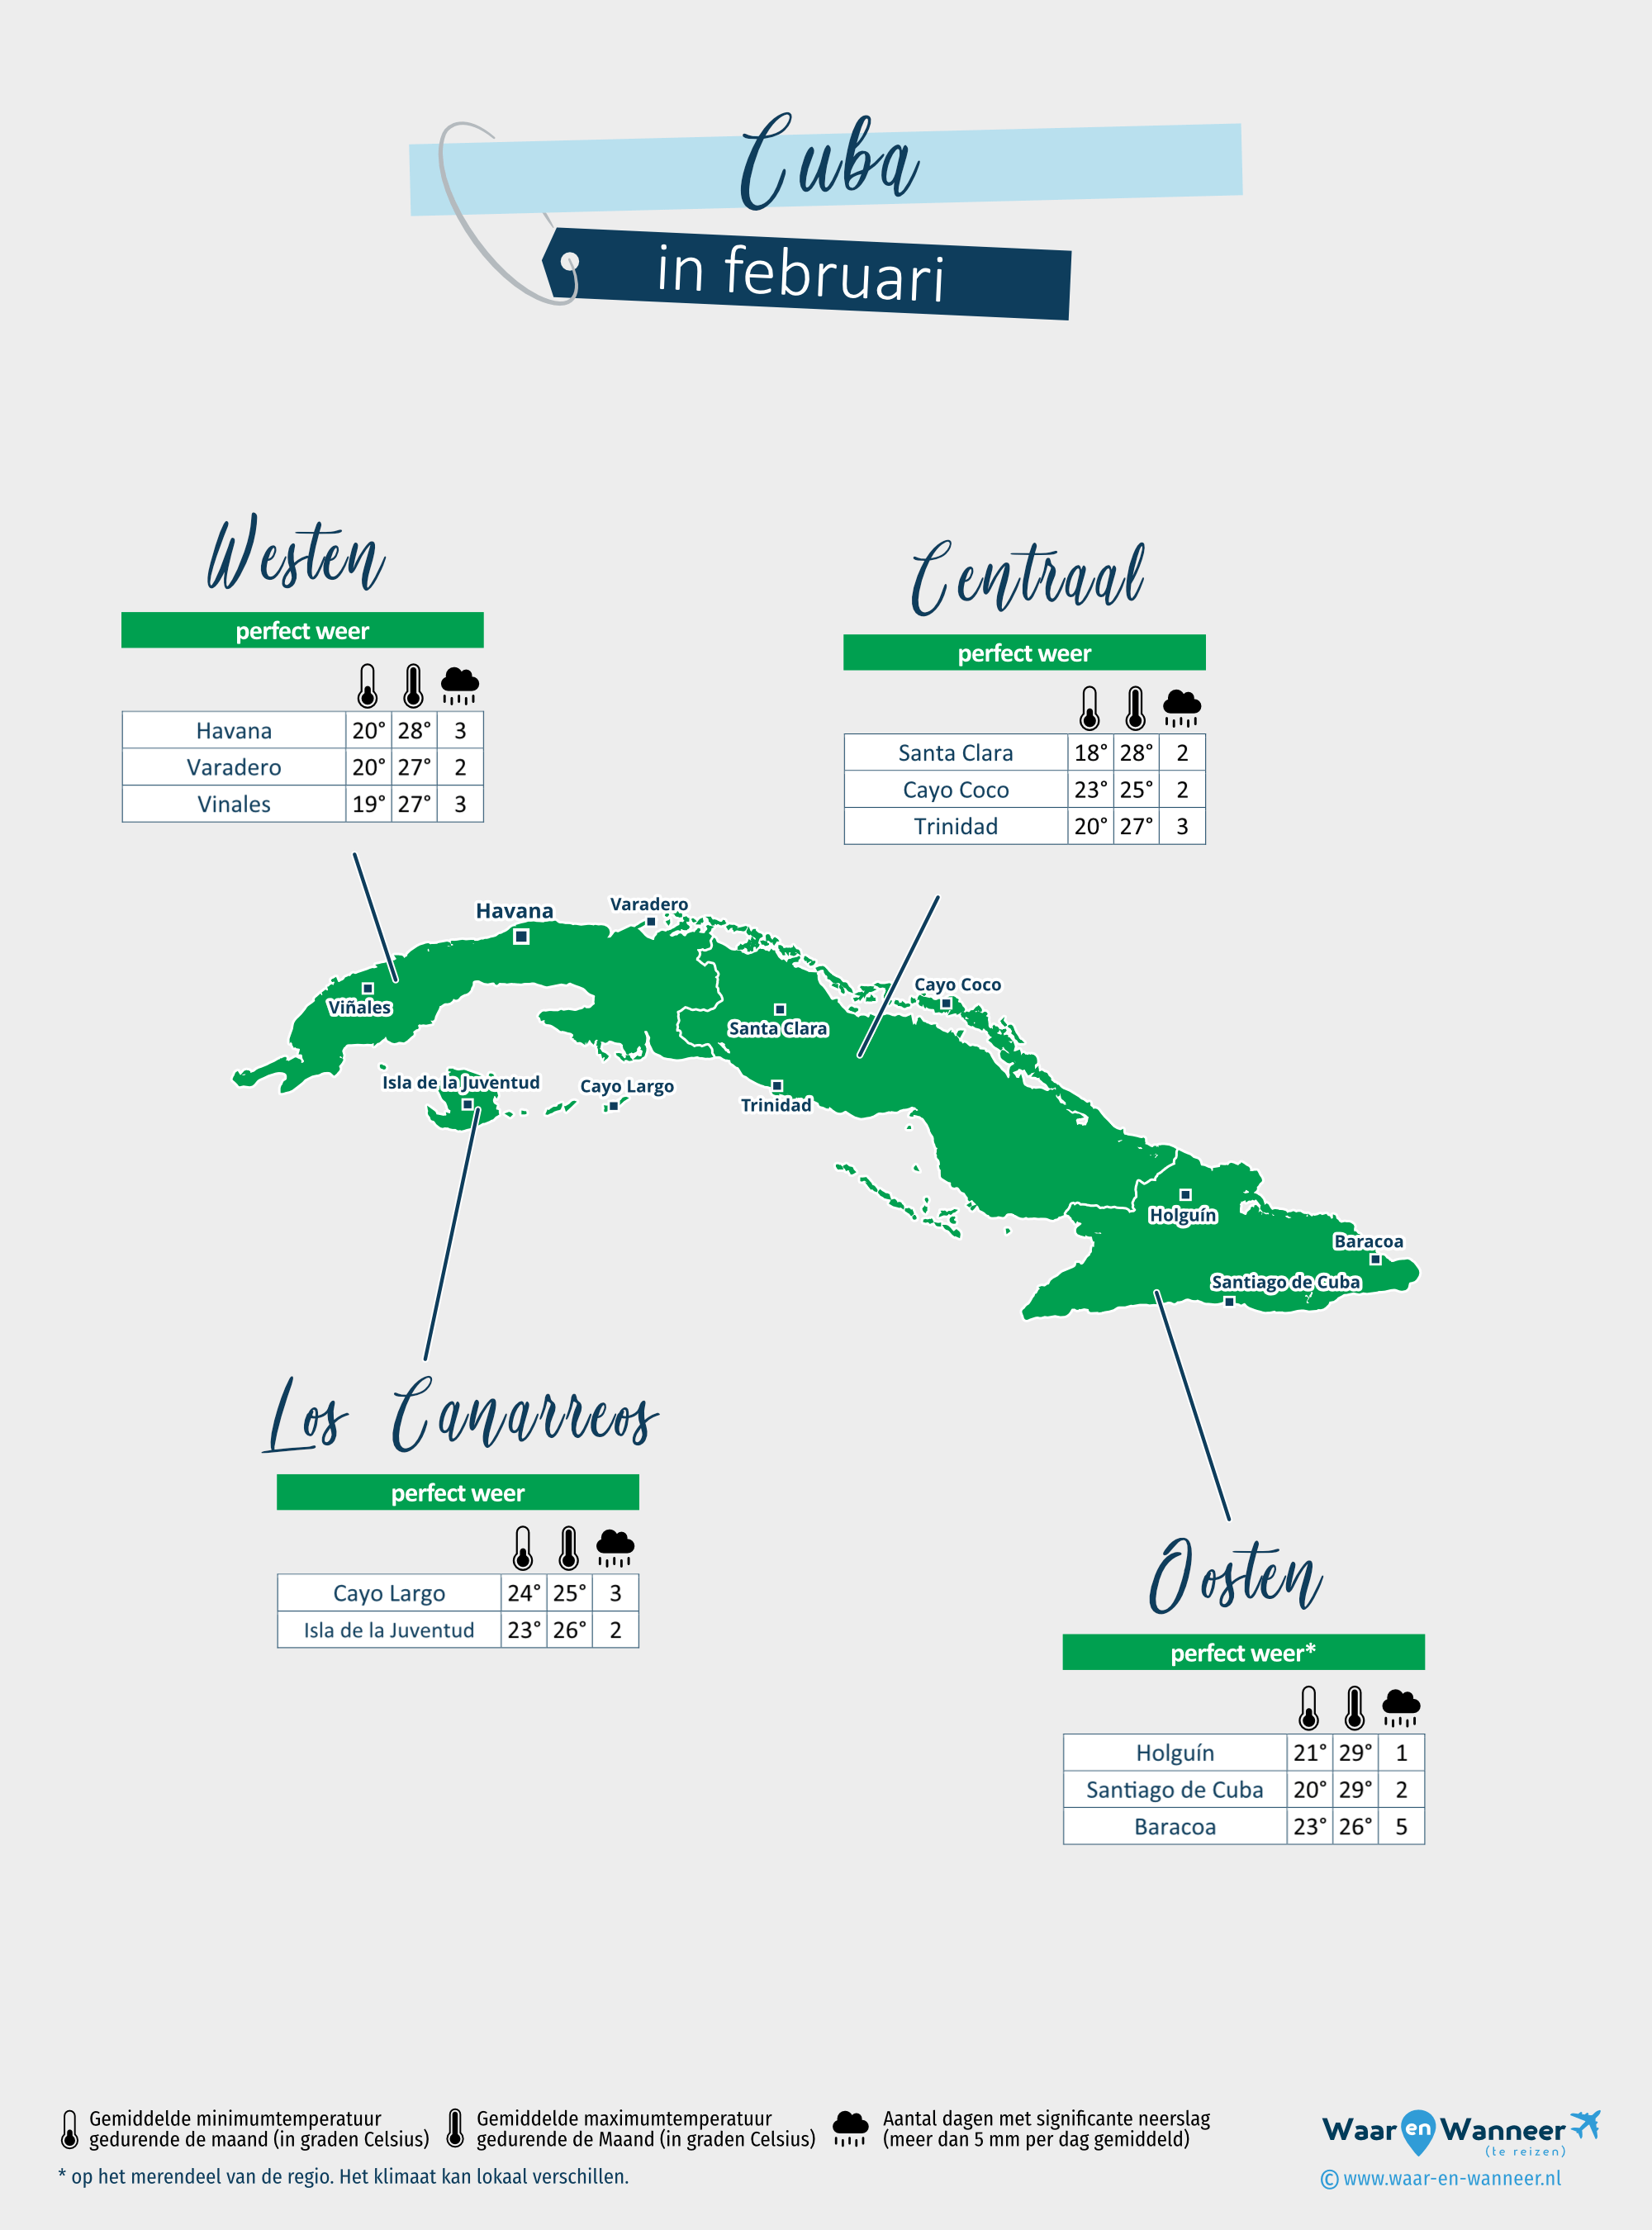 Cuba: weerkaart in februari in verschillende regio's